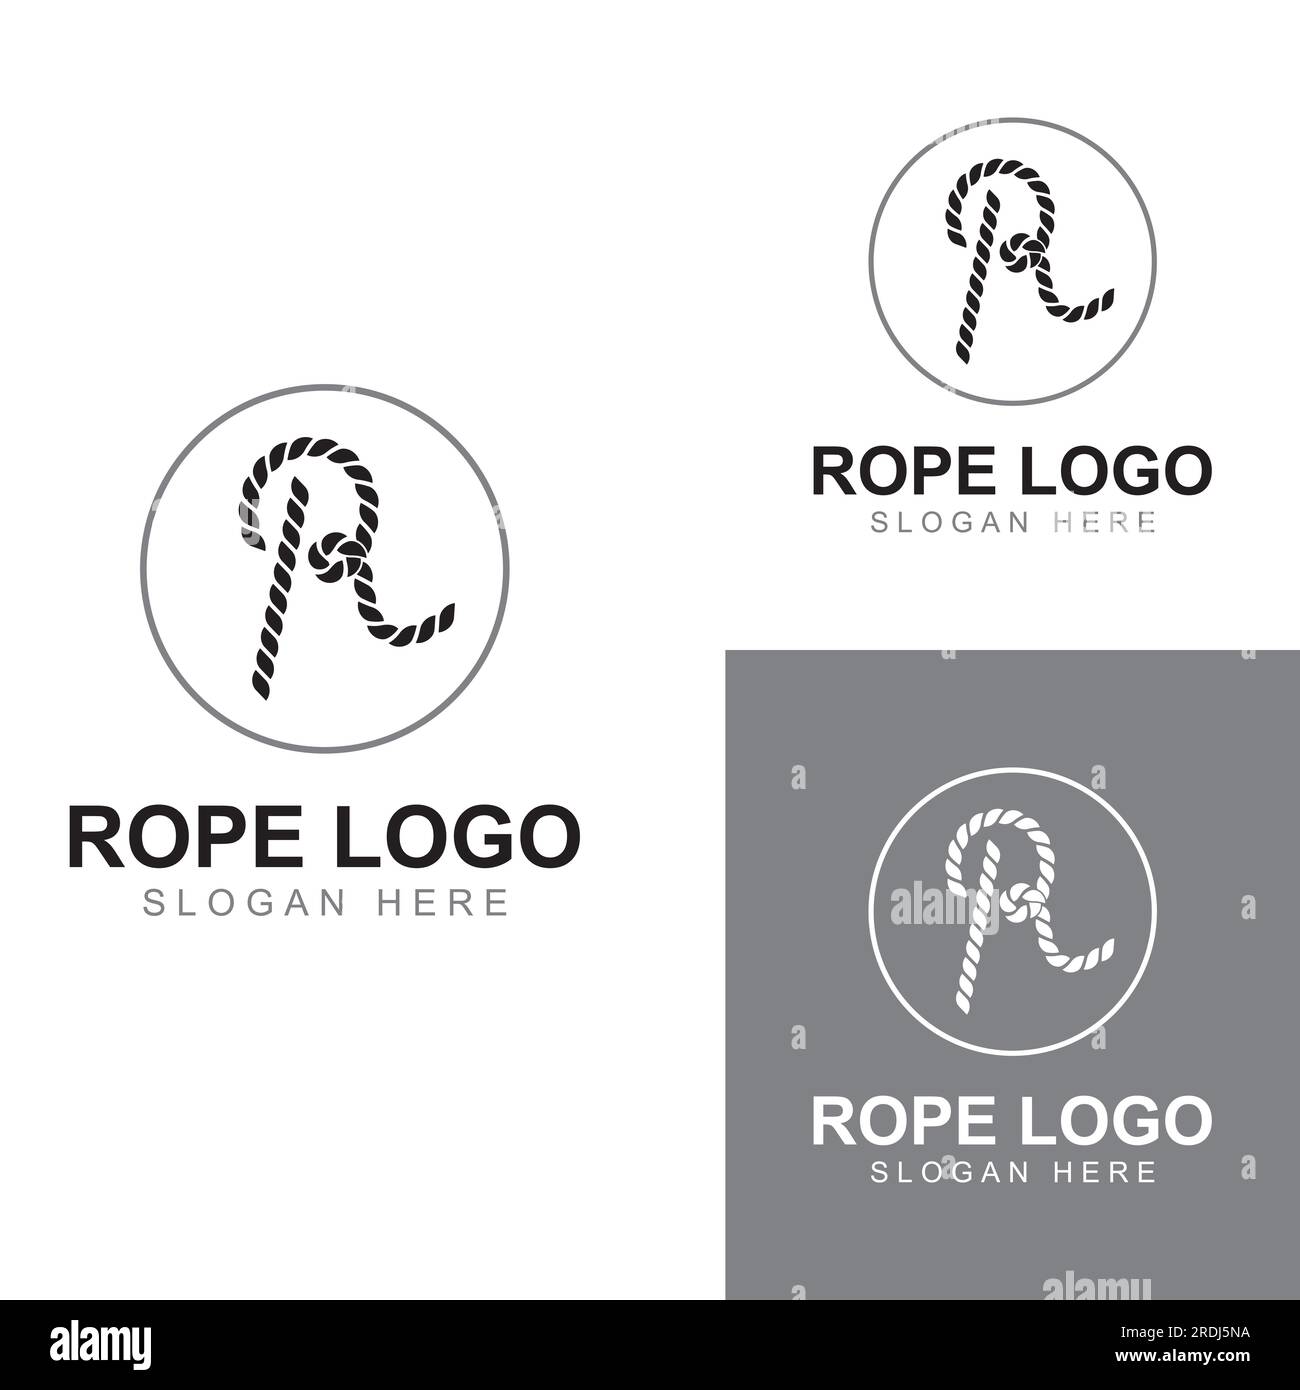 Logo de corde utilisant la conception vectorielle Illustration de Vecteur